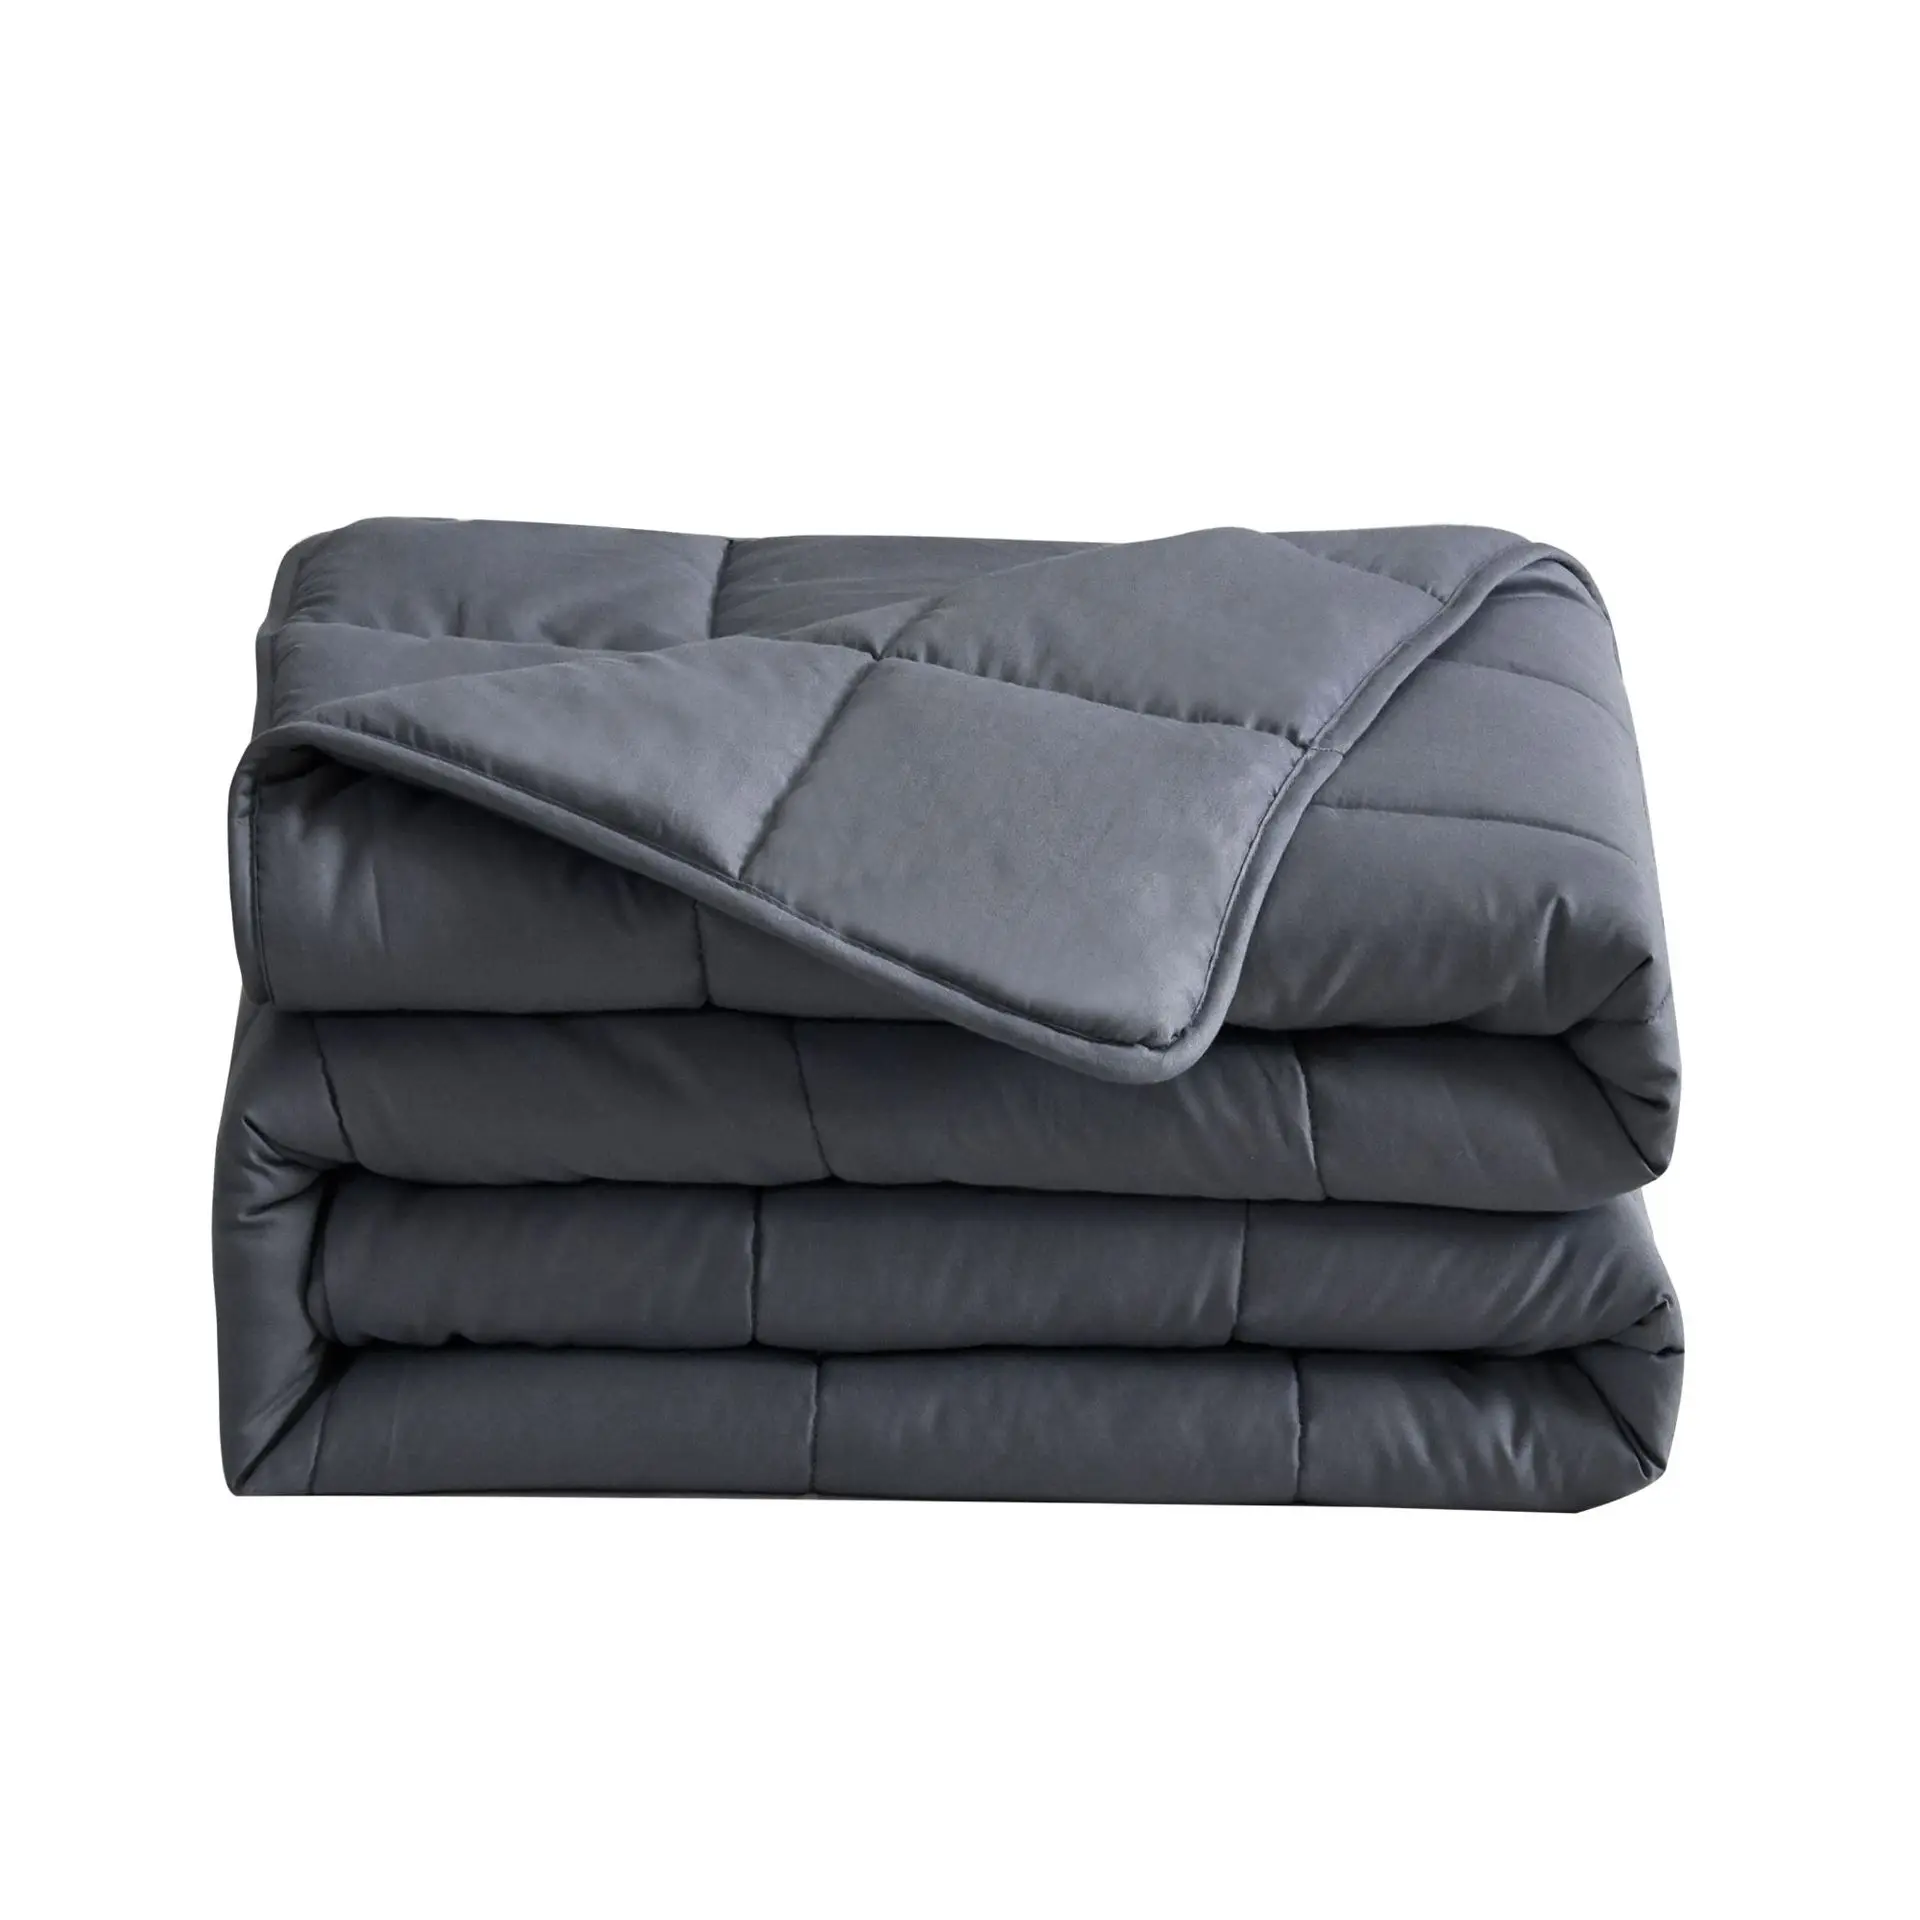 Тяжелые одеяла полноразмерная кровать 20lbs 1500x2000 мм прочные одеяла прохладная воздухопроницаемость спокойные спальные Утяжеленные одеяла